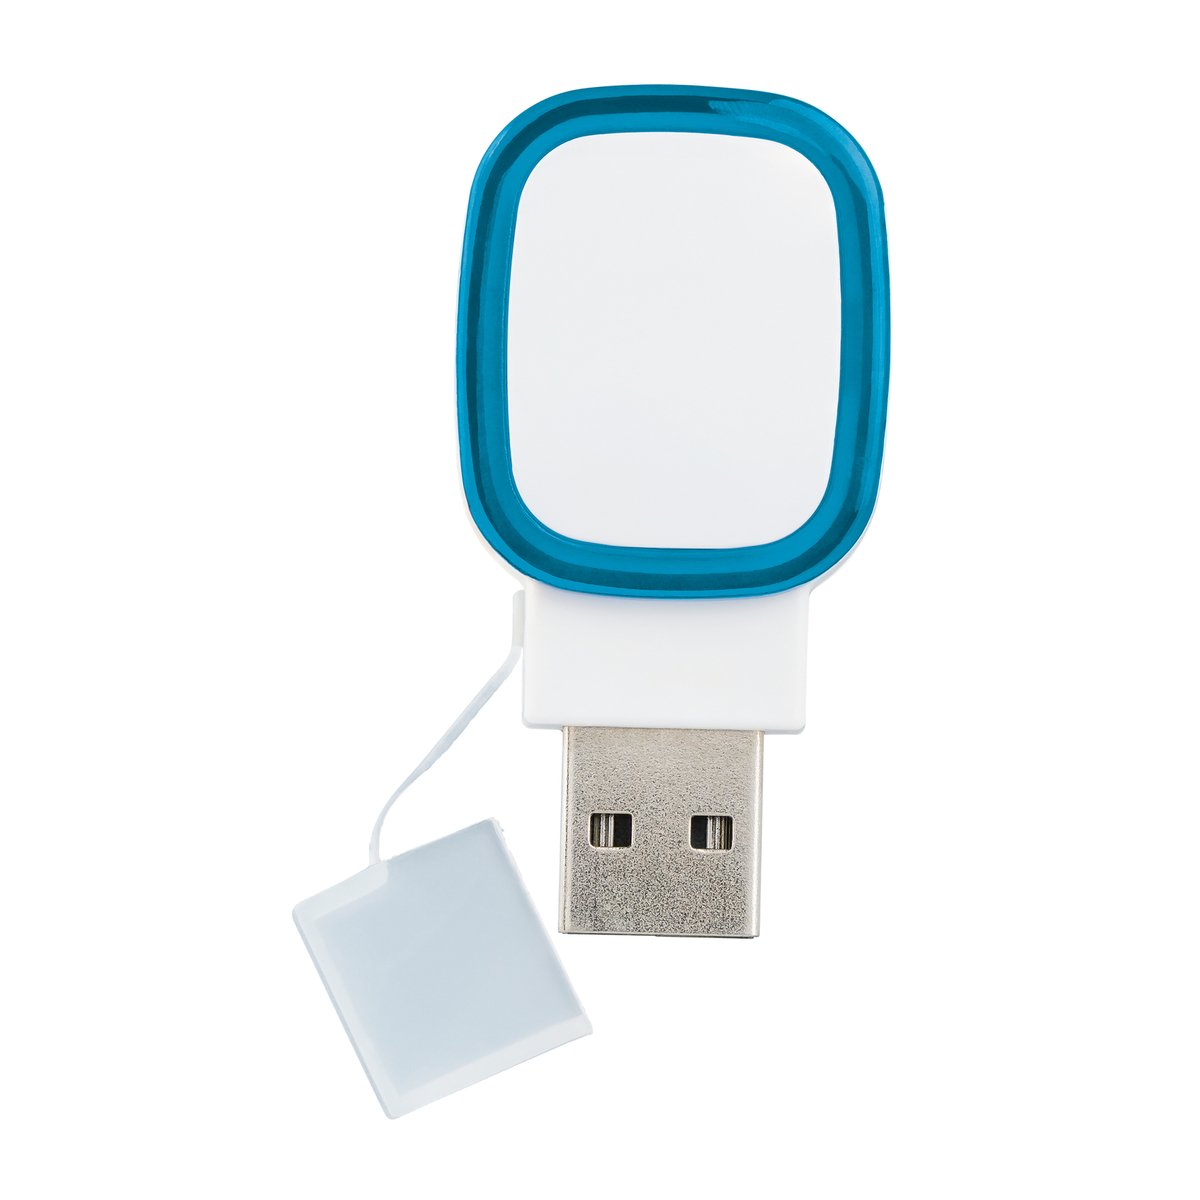 Clé USB COLLECTION 500 bleu clair 16Go